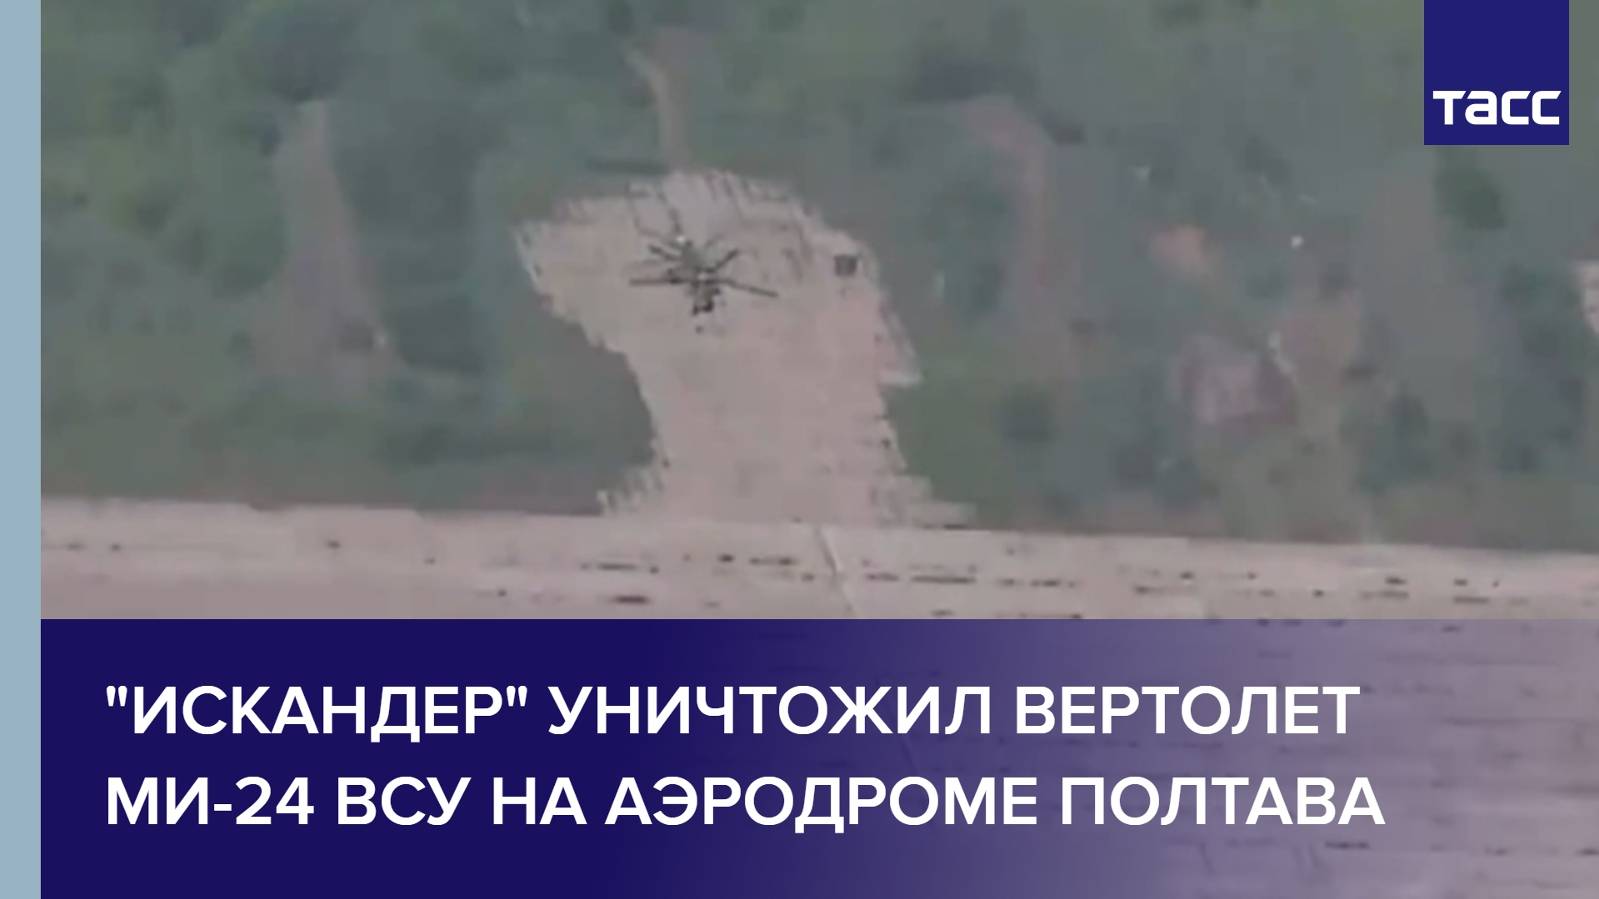 "Искандер" уничтожил вертолет Ми-24 ВСУ на аэродроме Полтава